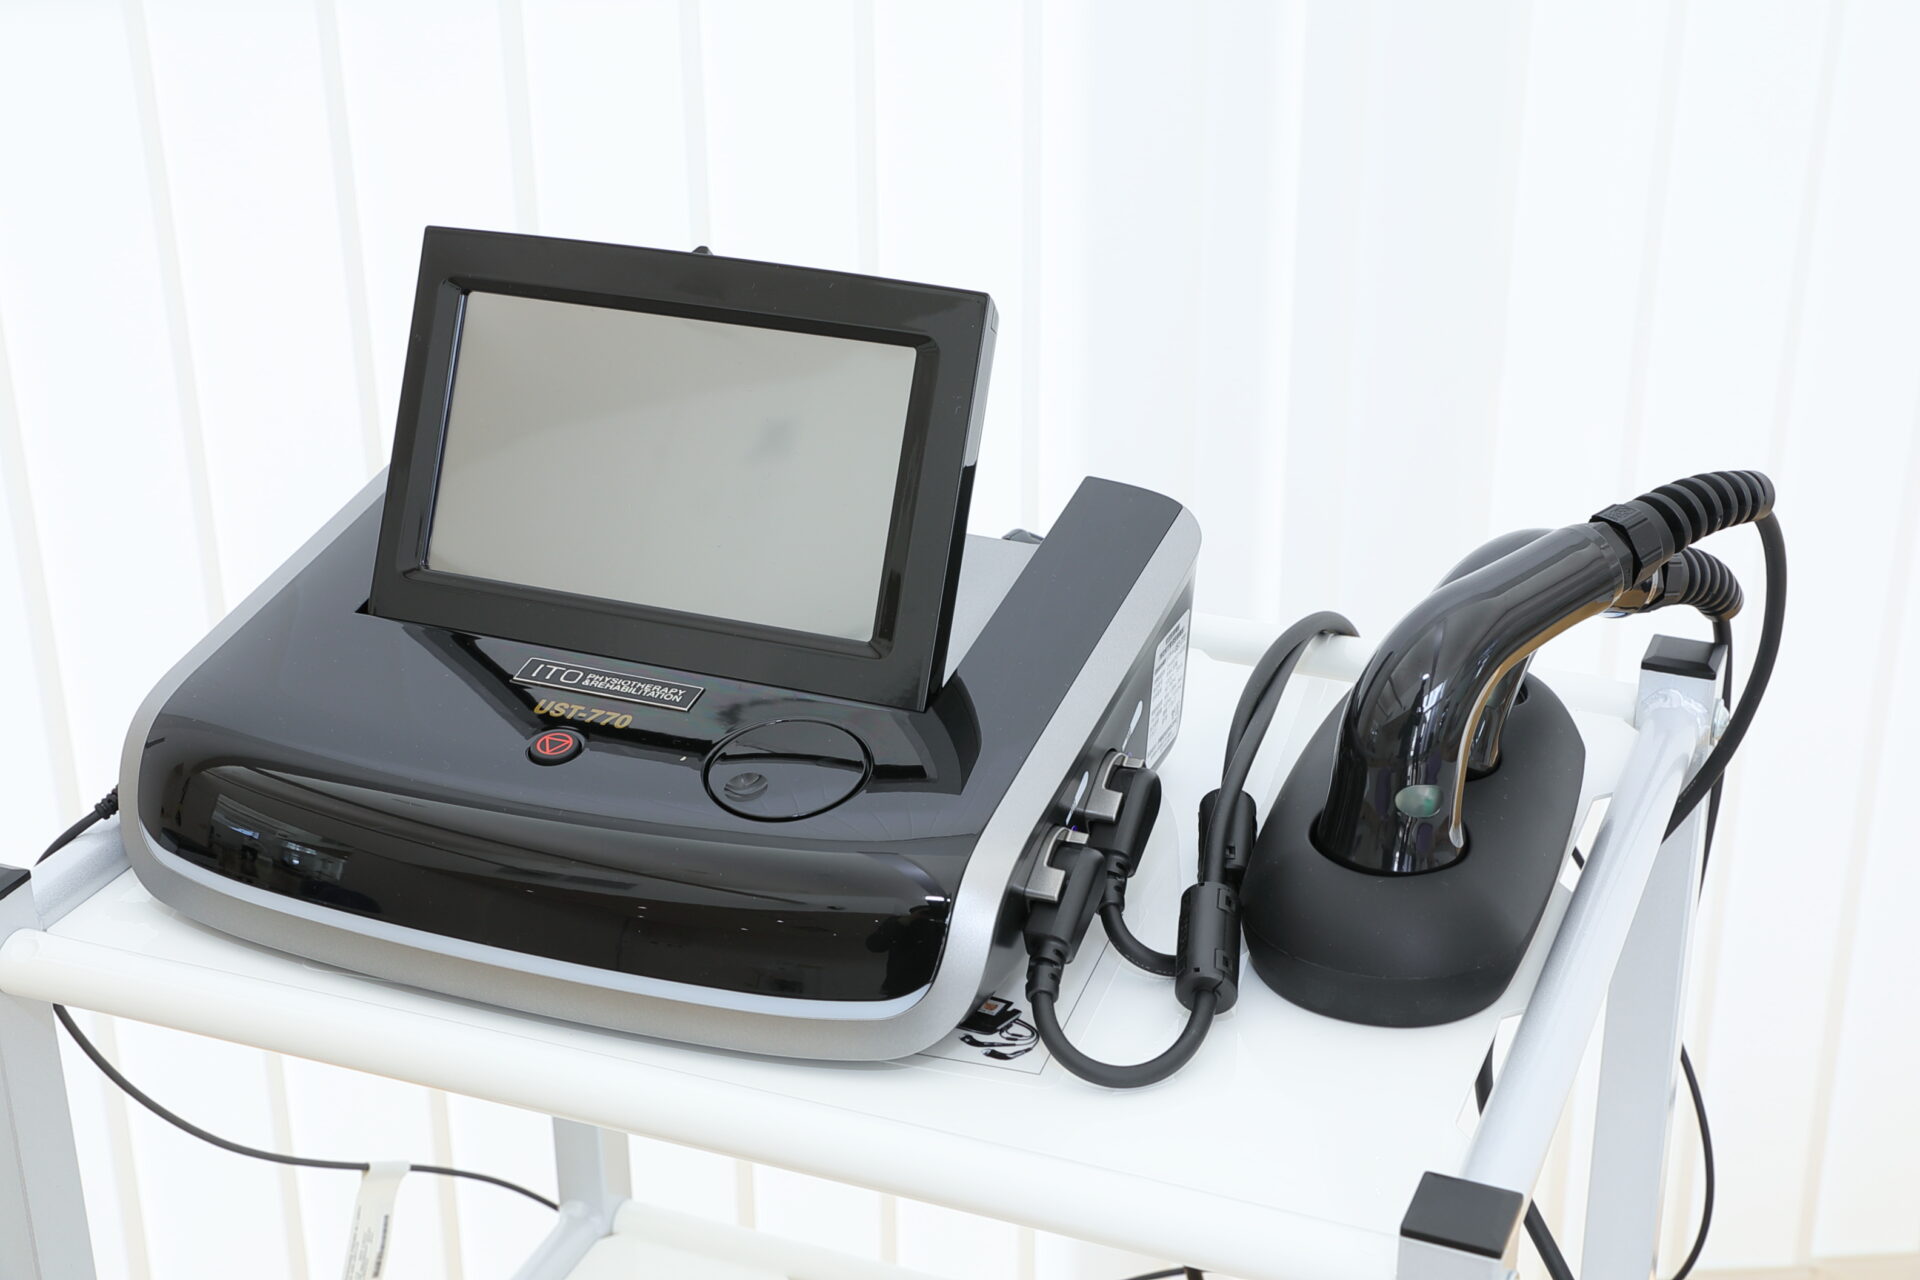 当院の超音波治療器は、伊藤超短波社製のイトーUST-770を導入しております。